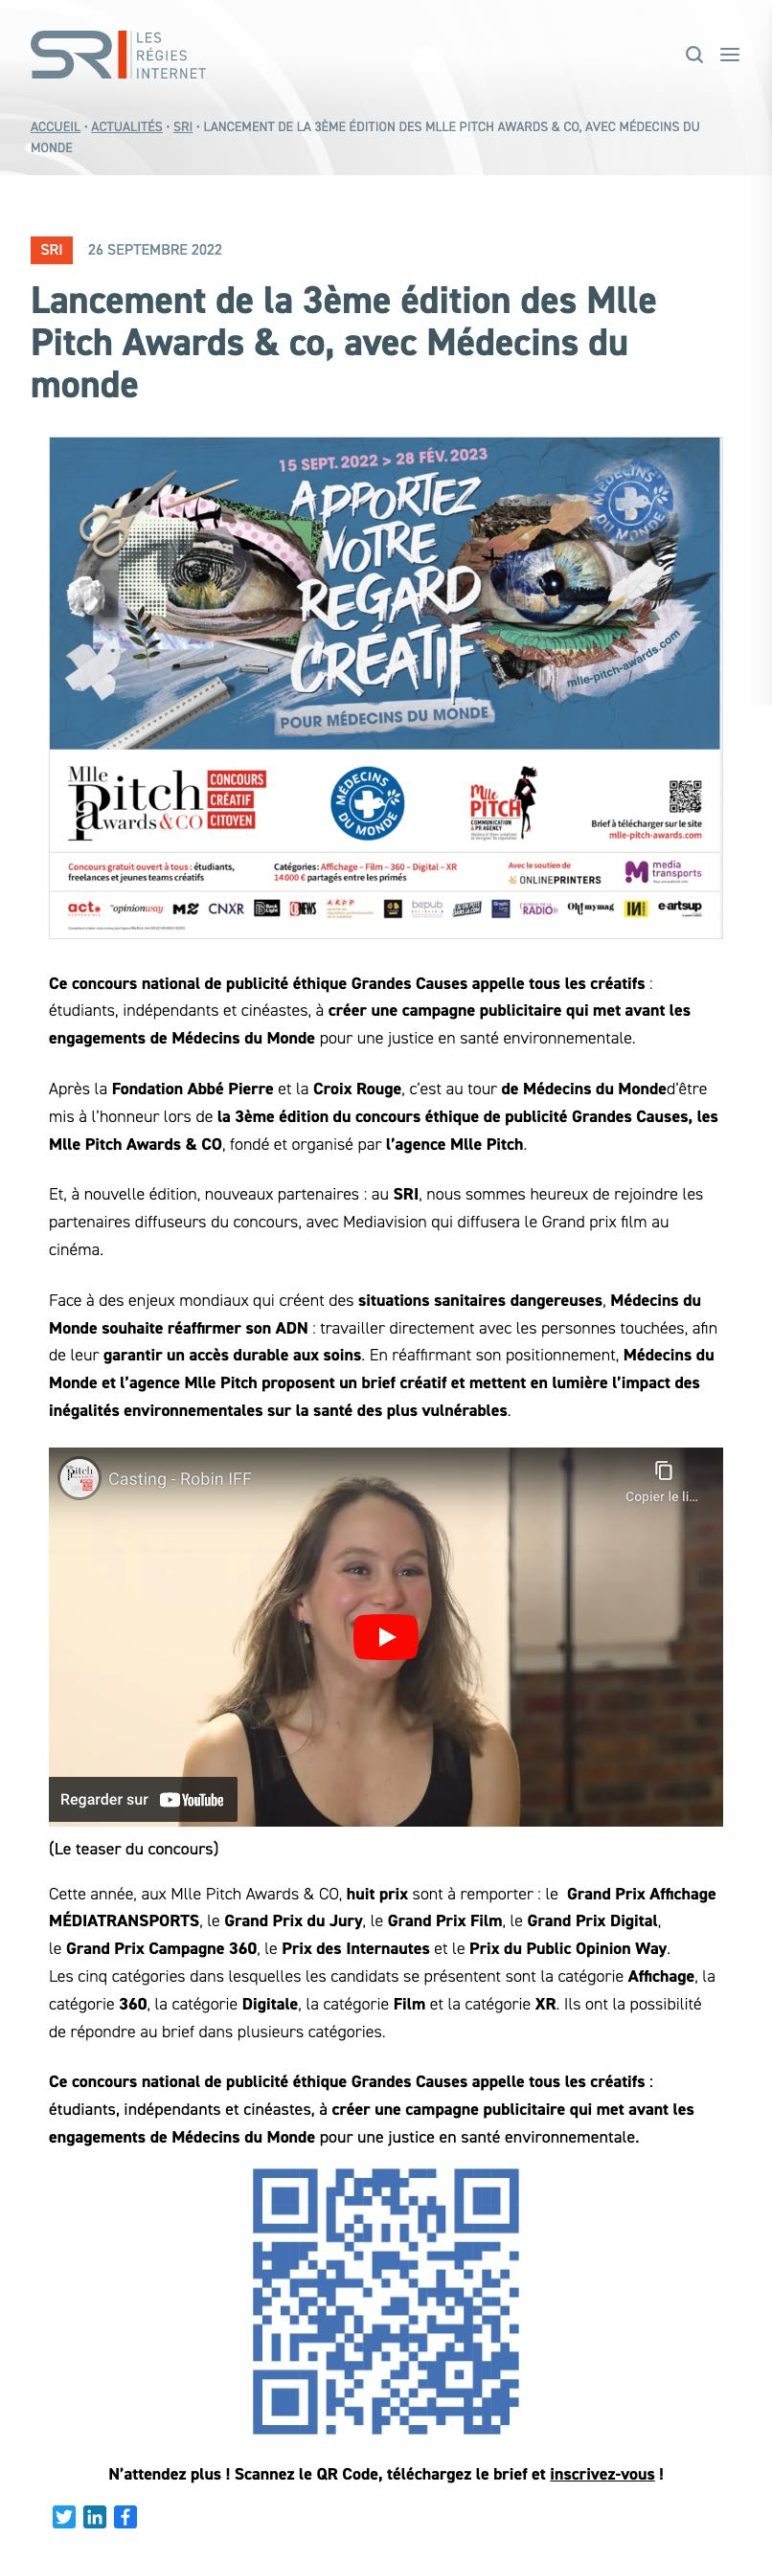 Lancement 3e edition Mlle Pitch Awards & co avec Médecins du Monde